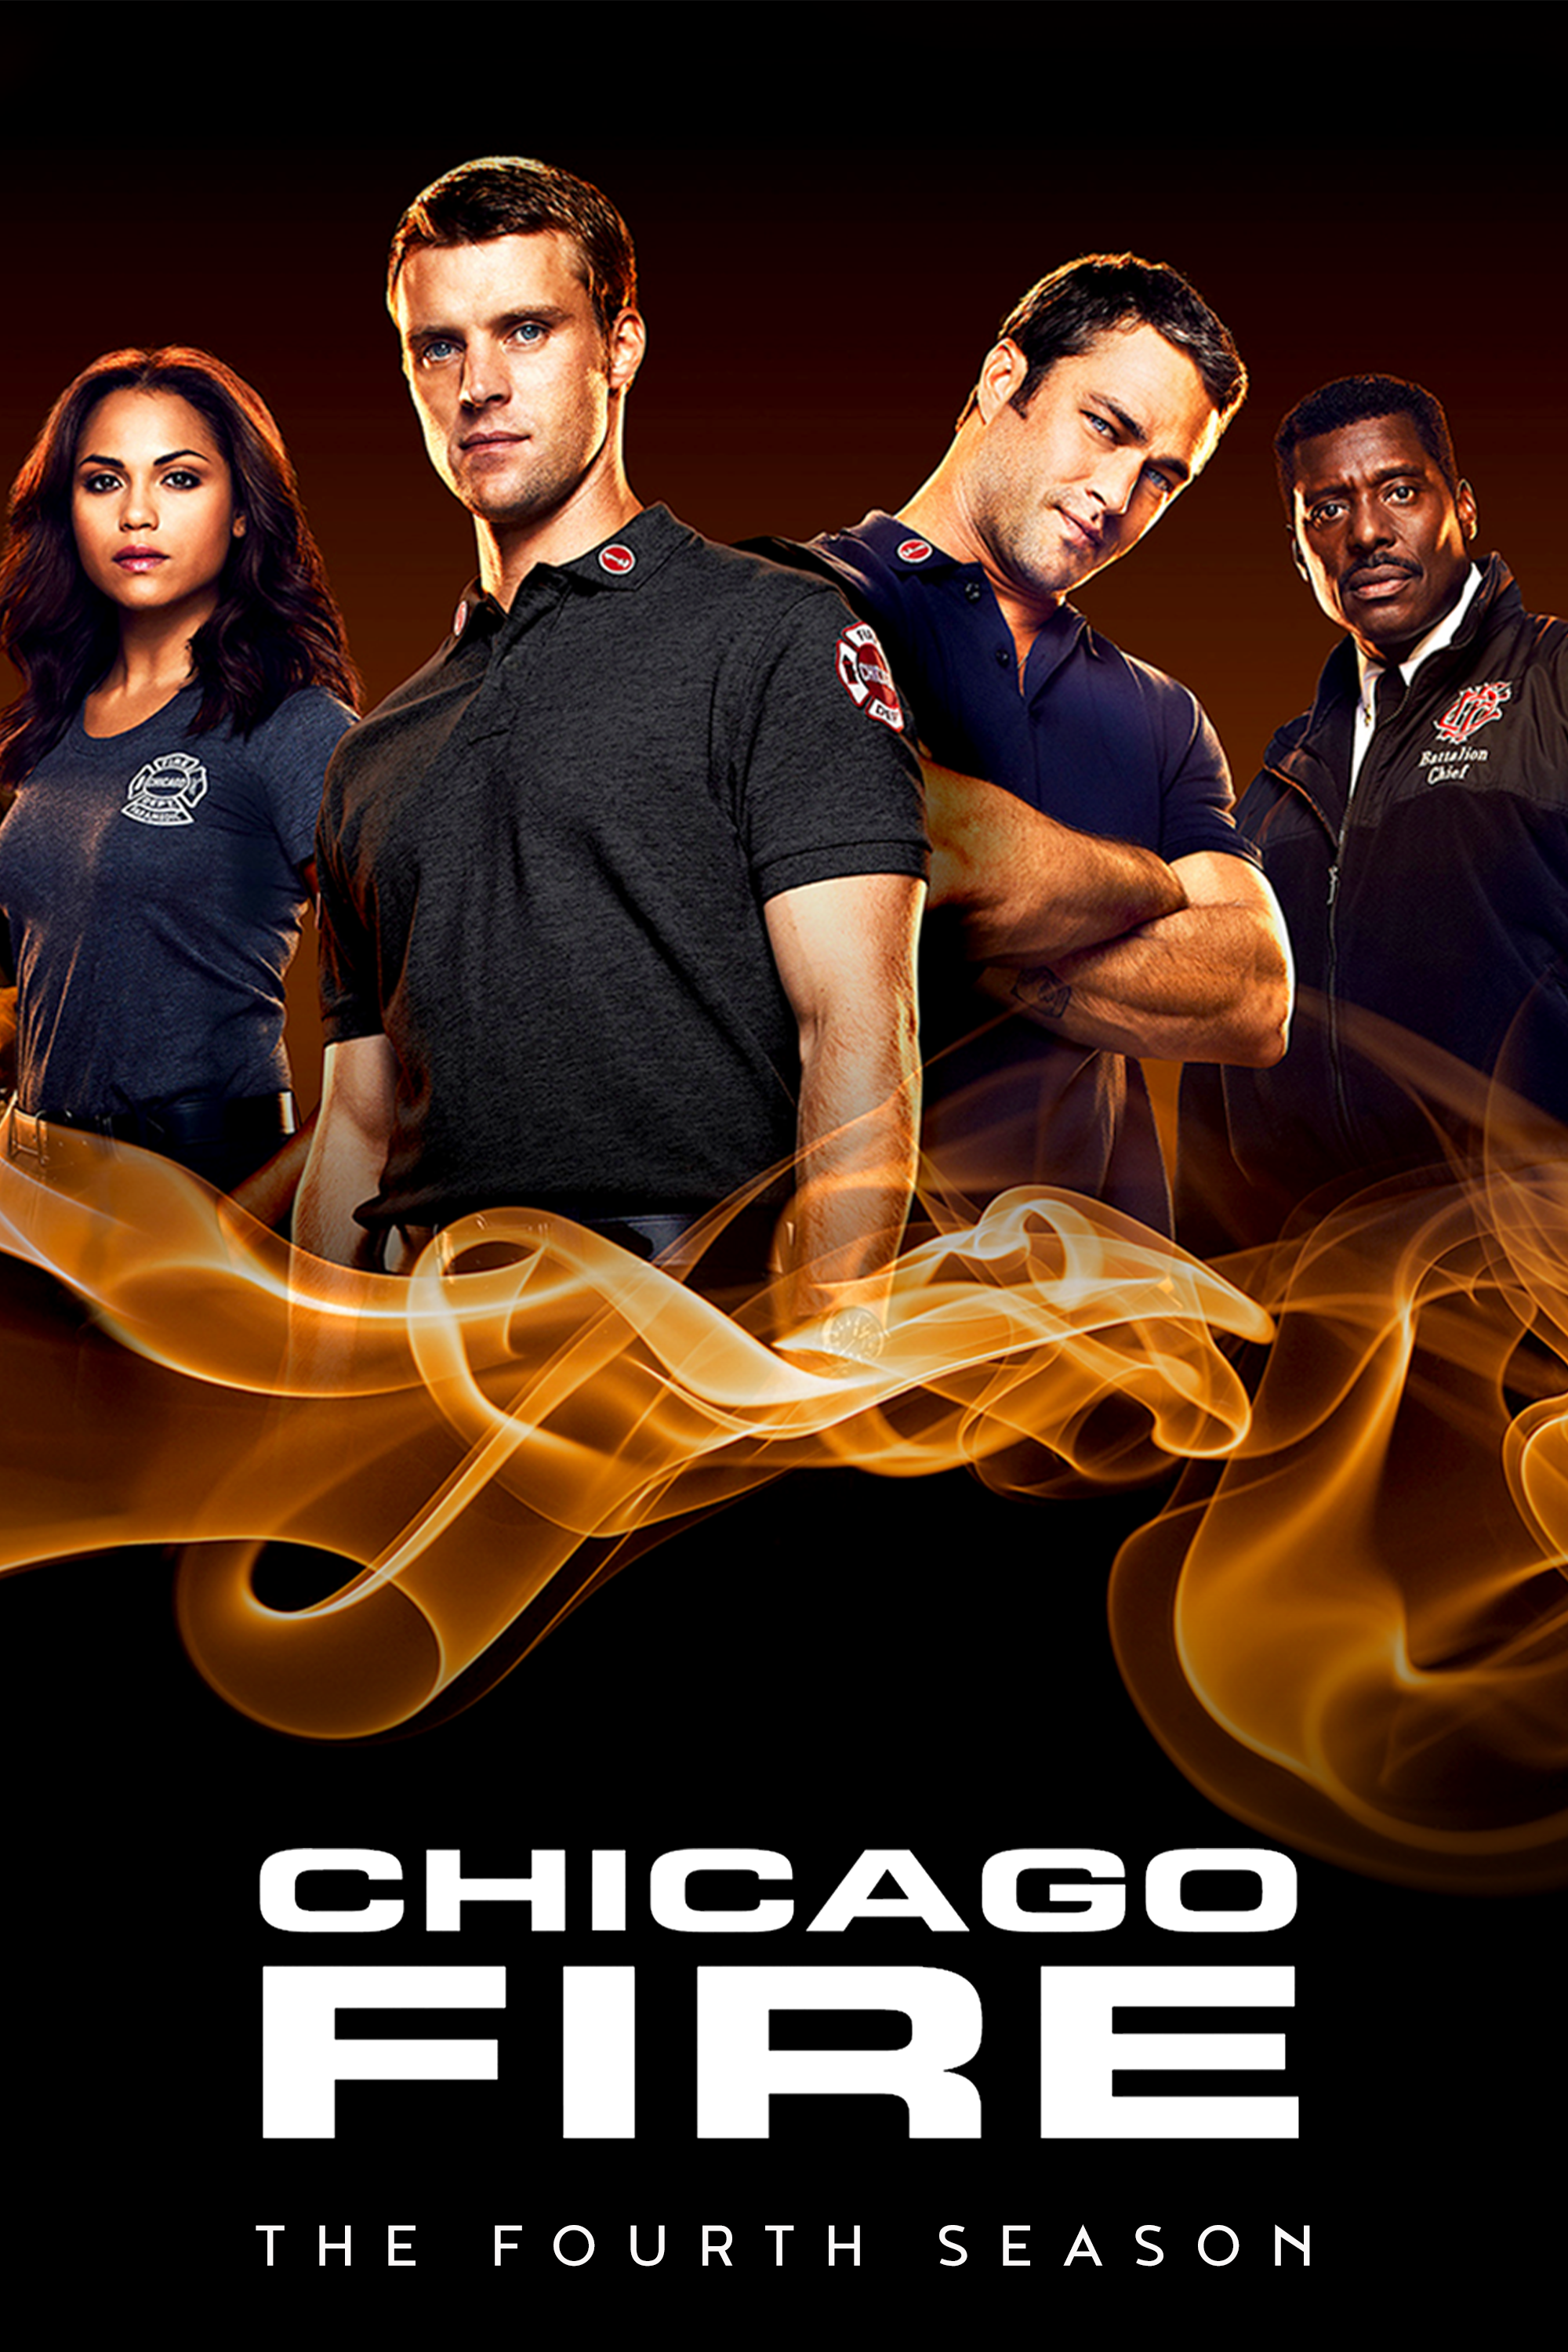 ดูหนังออนไลน์ฟรี Chicago Fire Season 4 EP.11 ชิคาโก้ ไฟร์ หน่วยดับเพลิงท้านรก ซีซั่นที่ 4 ตอนที่ 11